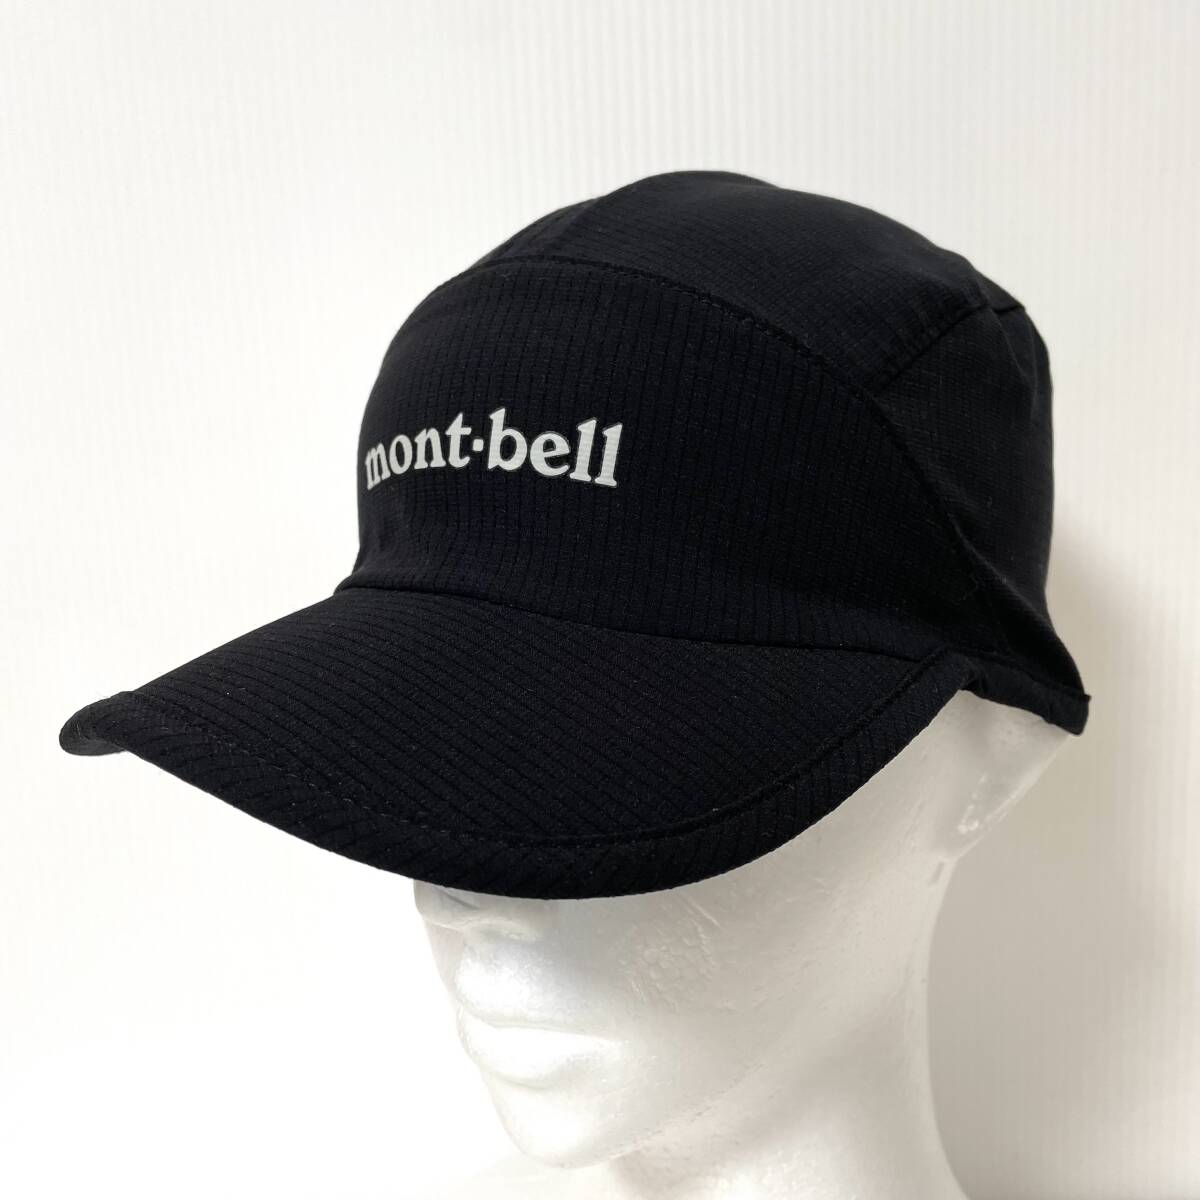 モンベル Mont-bell キャップ ブリーズドット クラッシャブルキャップ 1118688 BK ブラック 男女兼用 Sサイズ 54-56cmの画像1